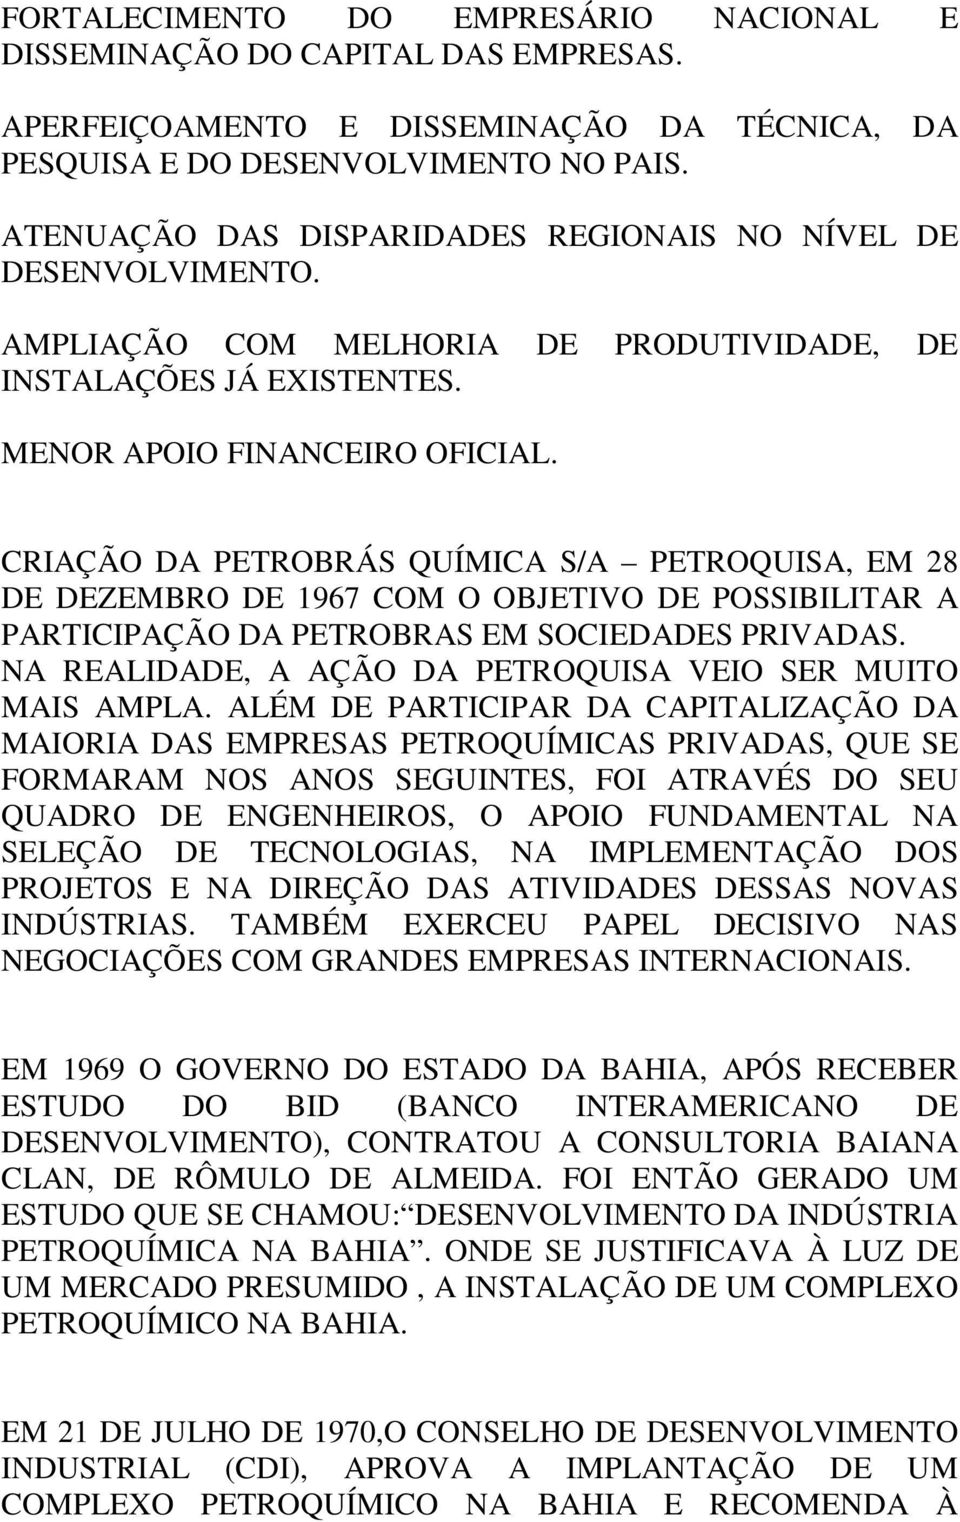 CRIAÇÃO DA PETROBRÁS QUÍMICA S/A PETROQUISA, EM 28 DE DEZEMBRO DE 1967 COM O OBJETIVO DE POSSIBILITAR A PARTICIPAÇÃO DA PETROBRAS EM SOCIEDADES PRIVADAS.